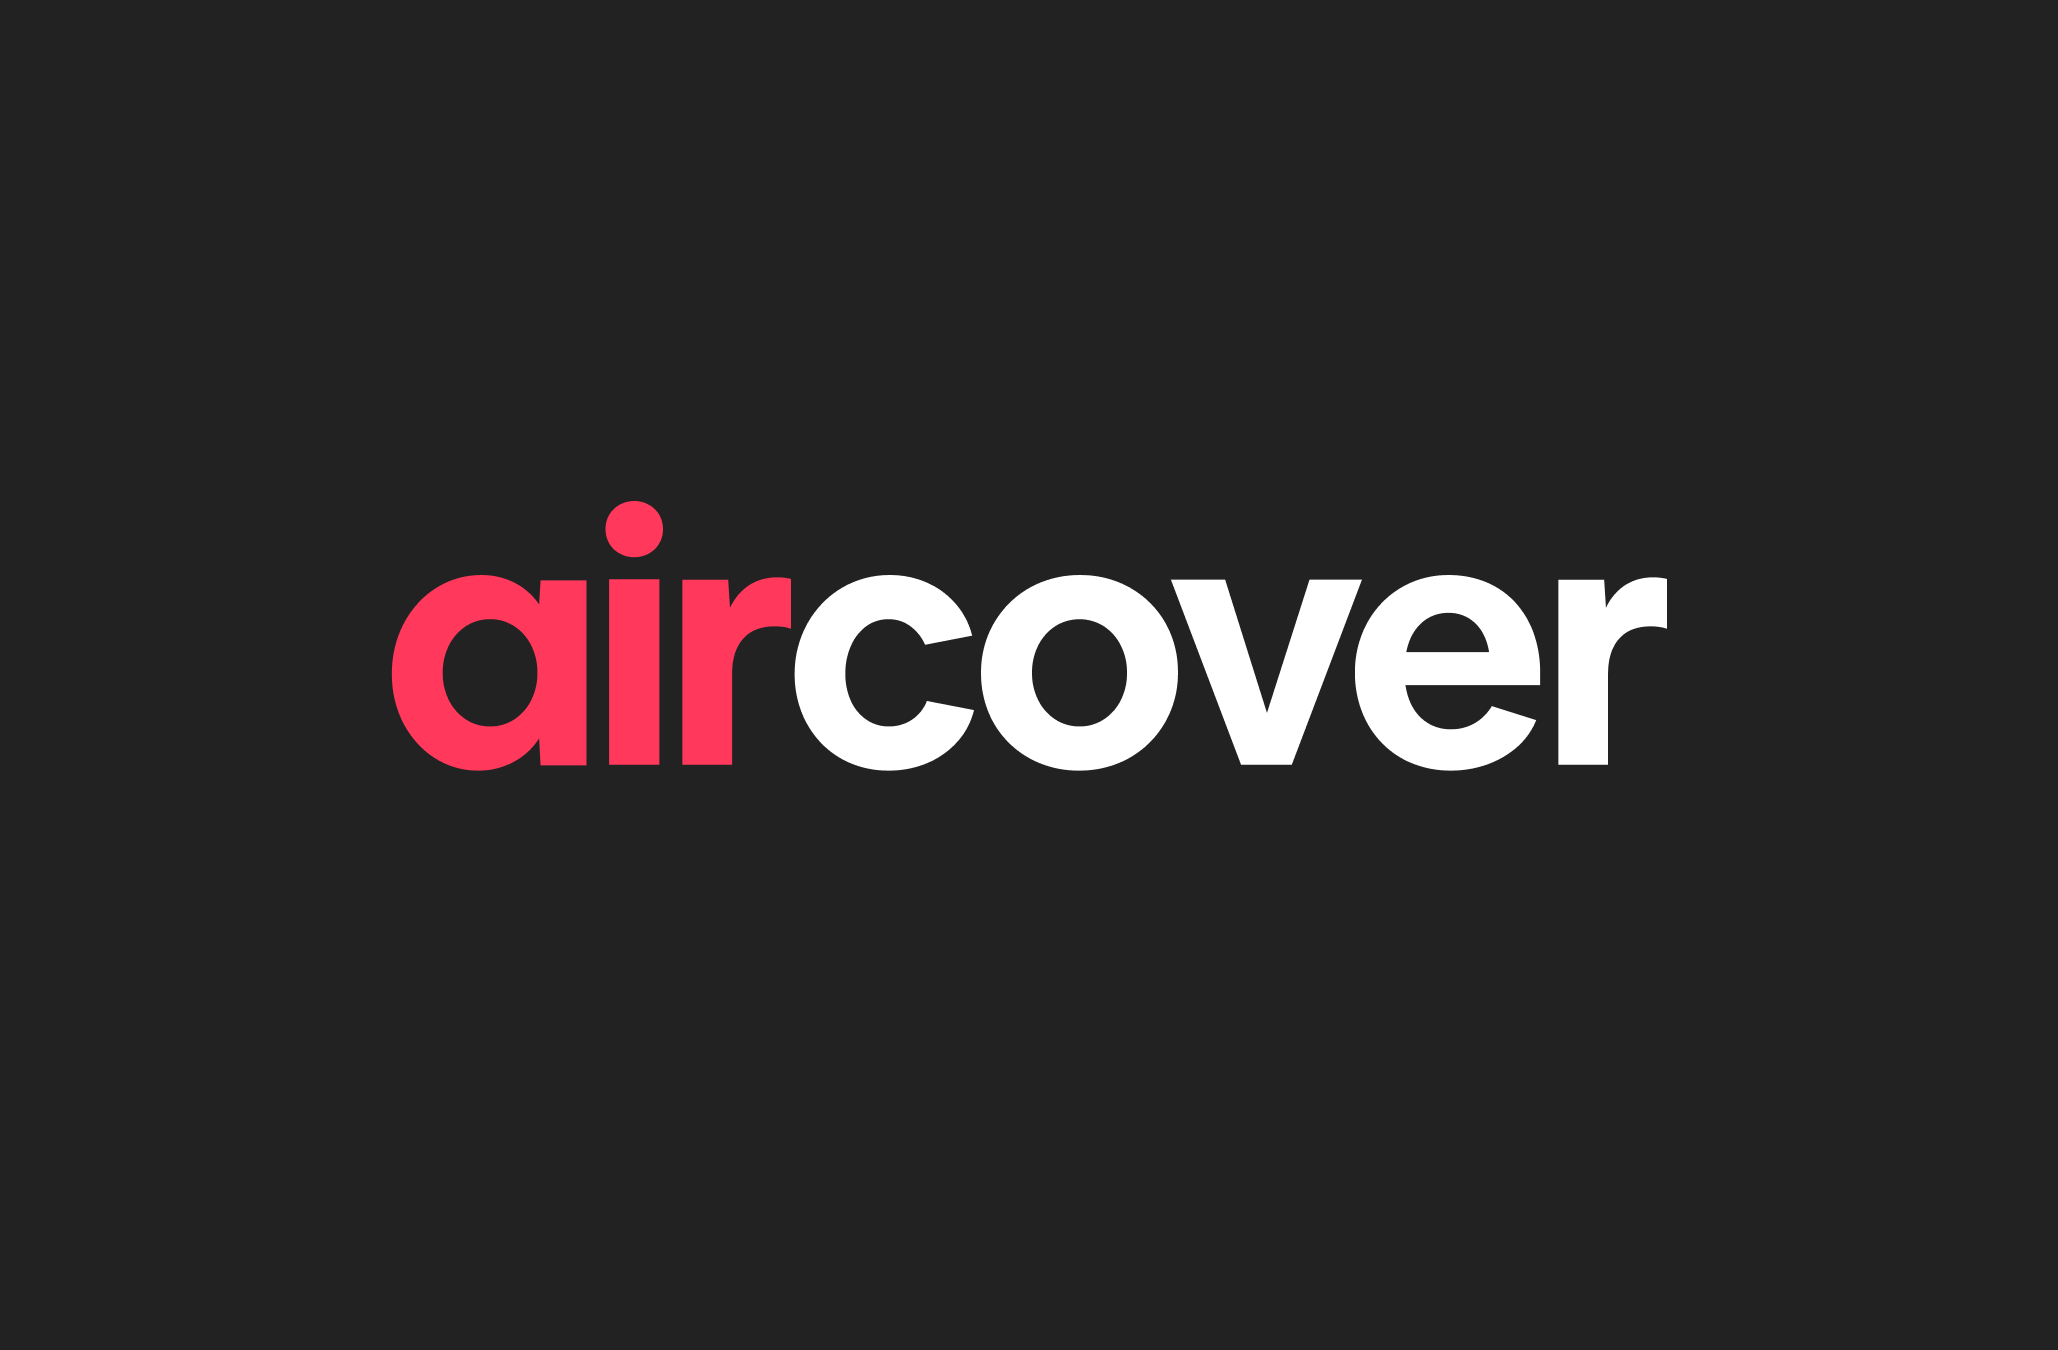 AirCoverin logo punaisilla ja valkoisilla kirjaimilla mustalla taustalla.